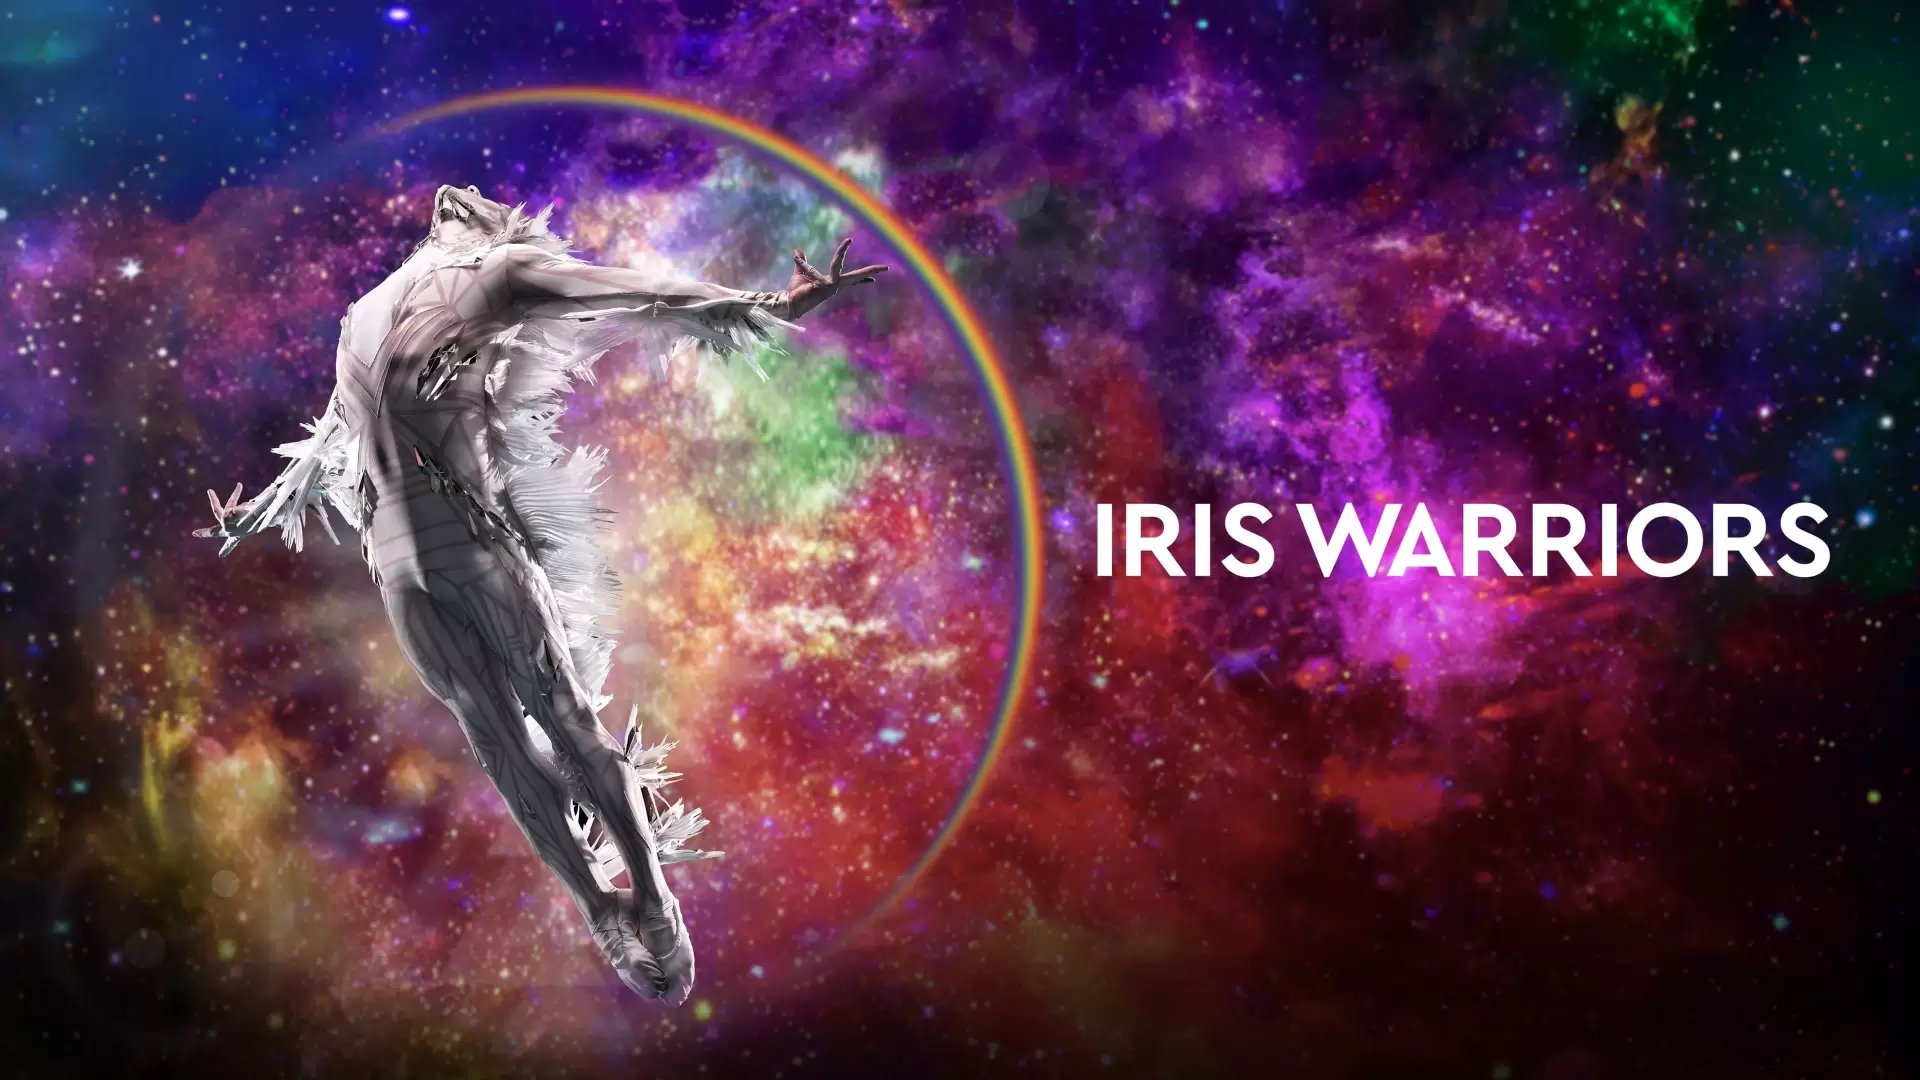 دانلود فیلم Iris Warriors 2022